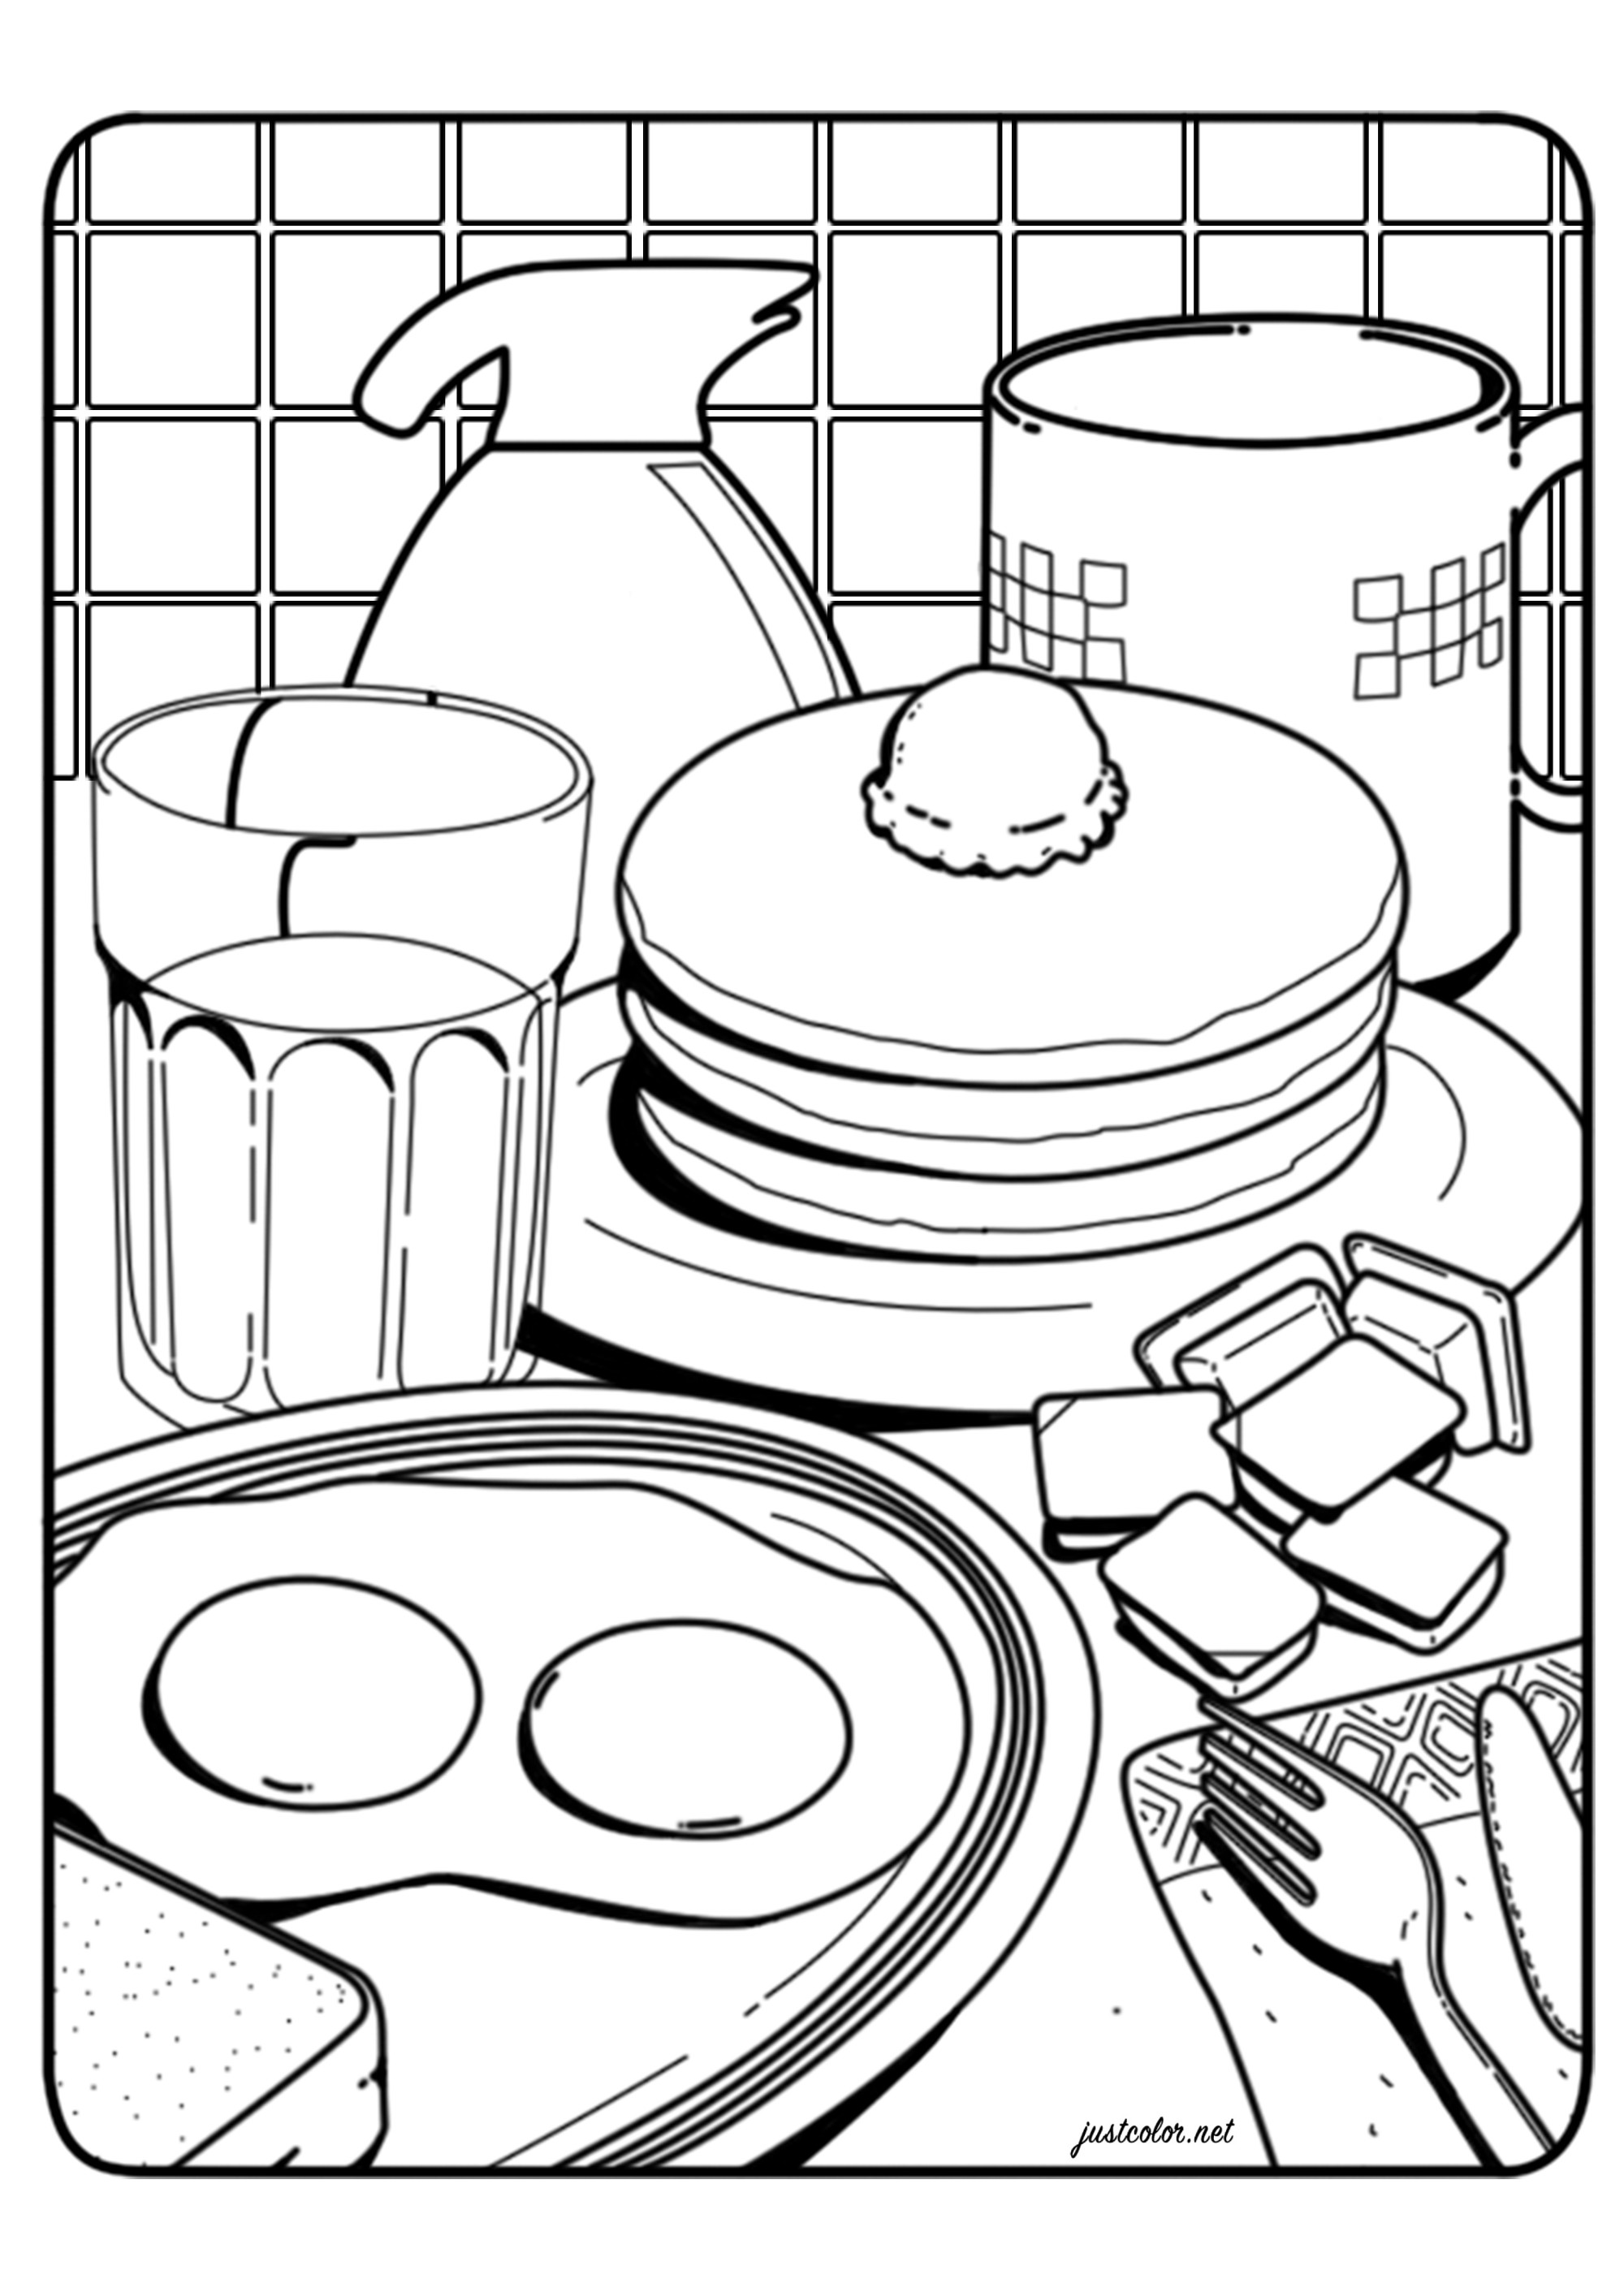 Um bom pequeno-almoço com ovos estrelados, panquecas, café...  Uma página para colorir inspirada na ilustração 'O pequeno-almoço' de Lauren Martin, Artista : Warrick D